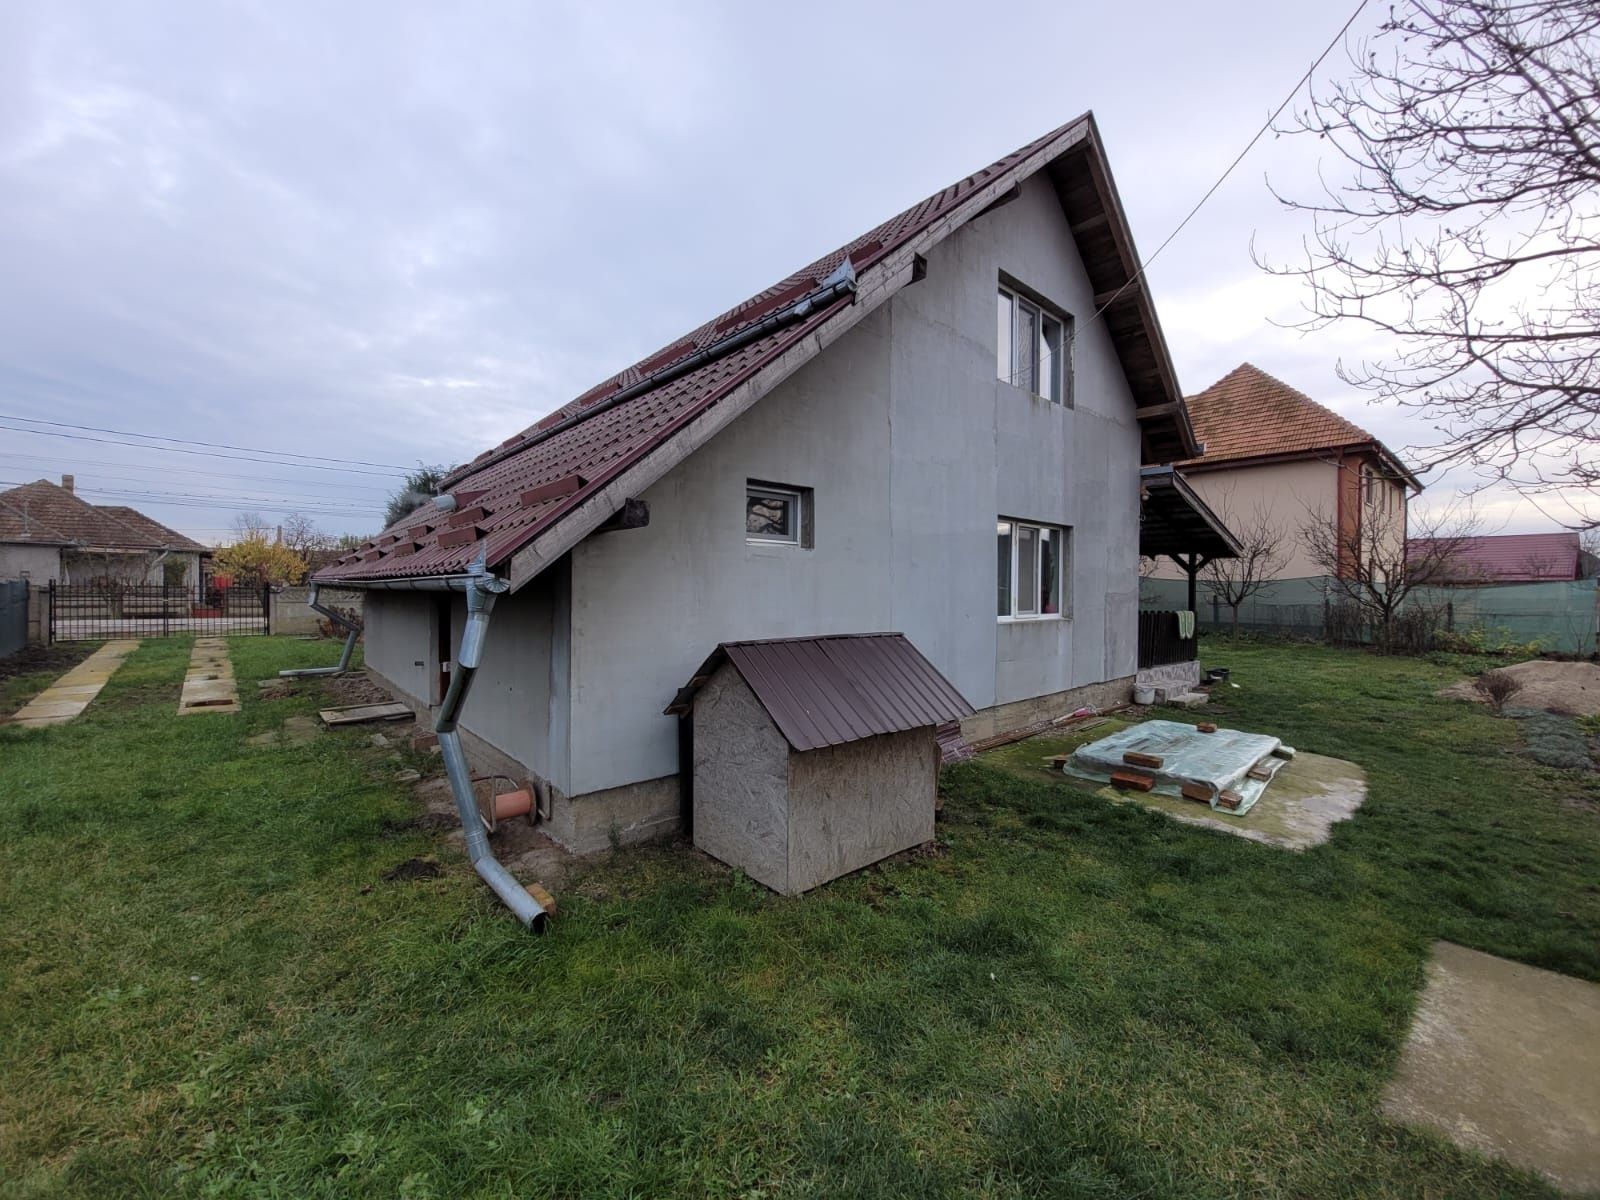 Vând casă proprietate privata în comuna Bogata, județul Mureș